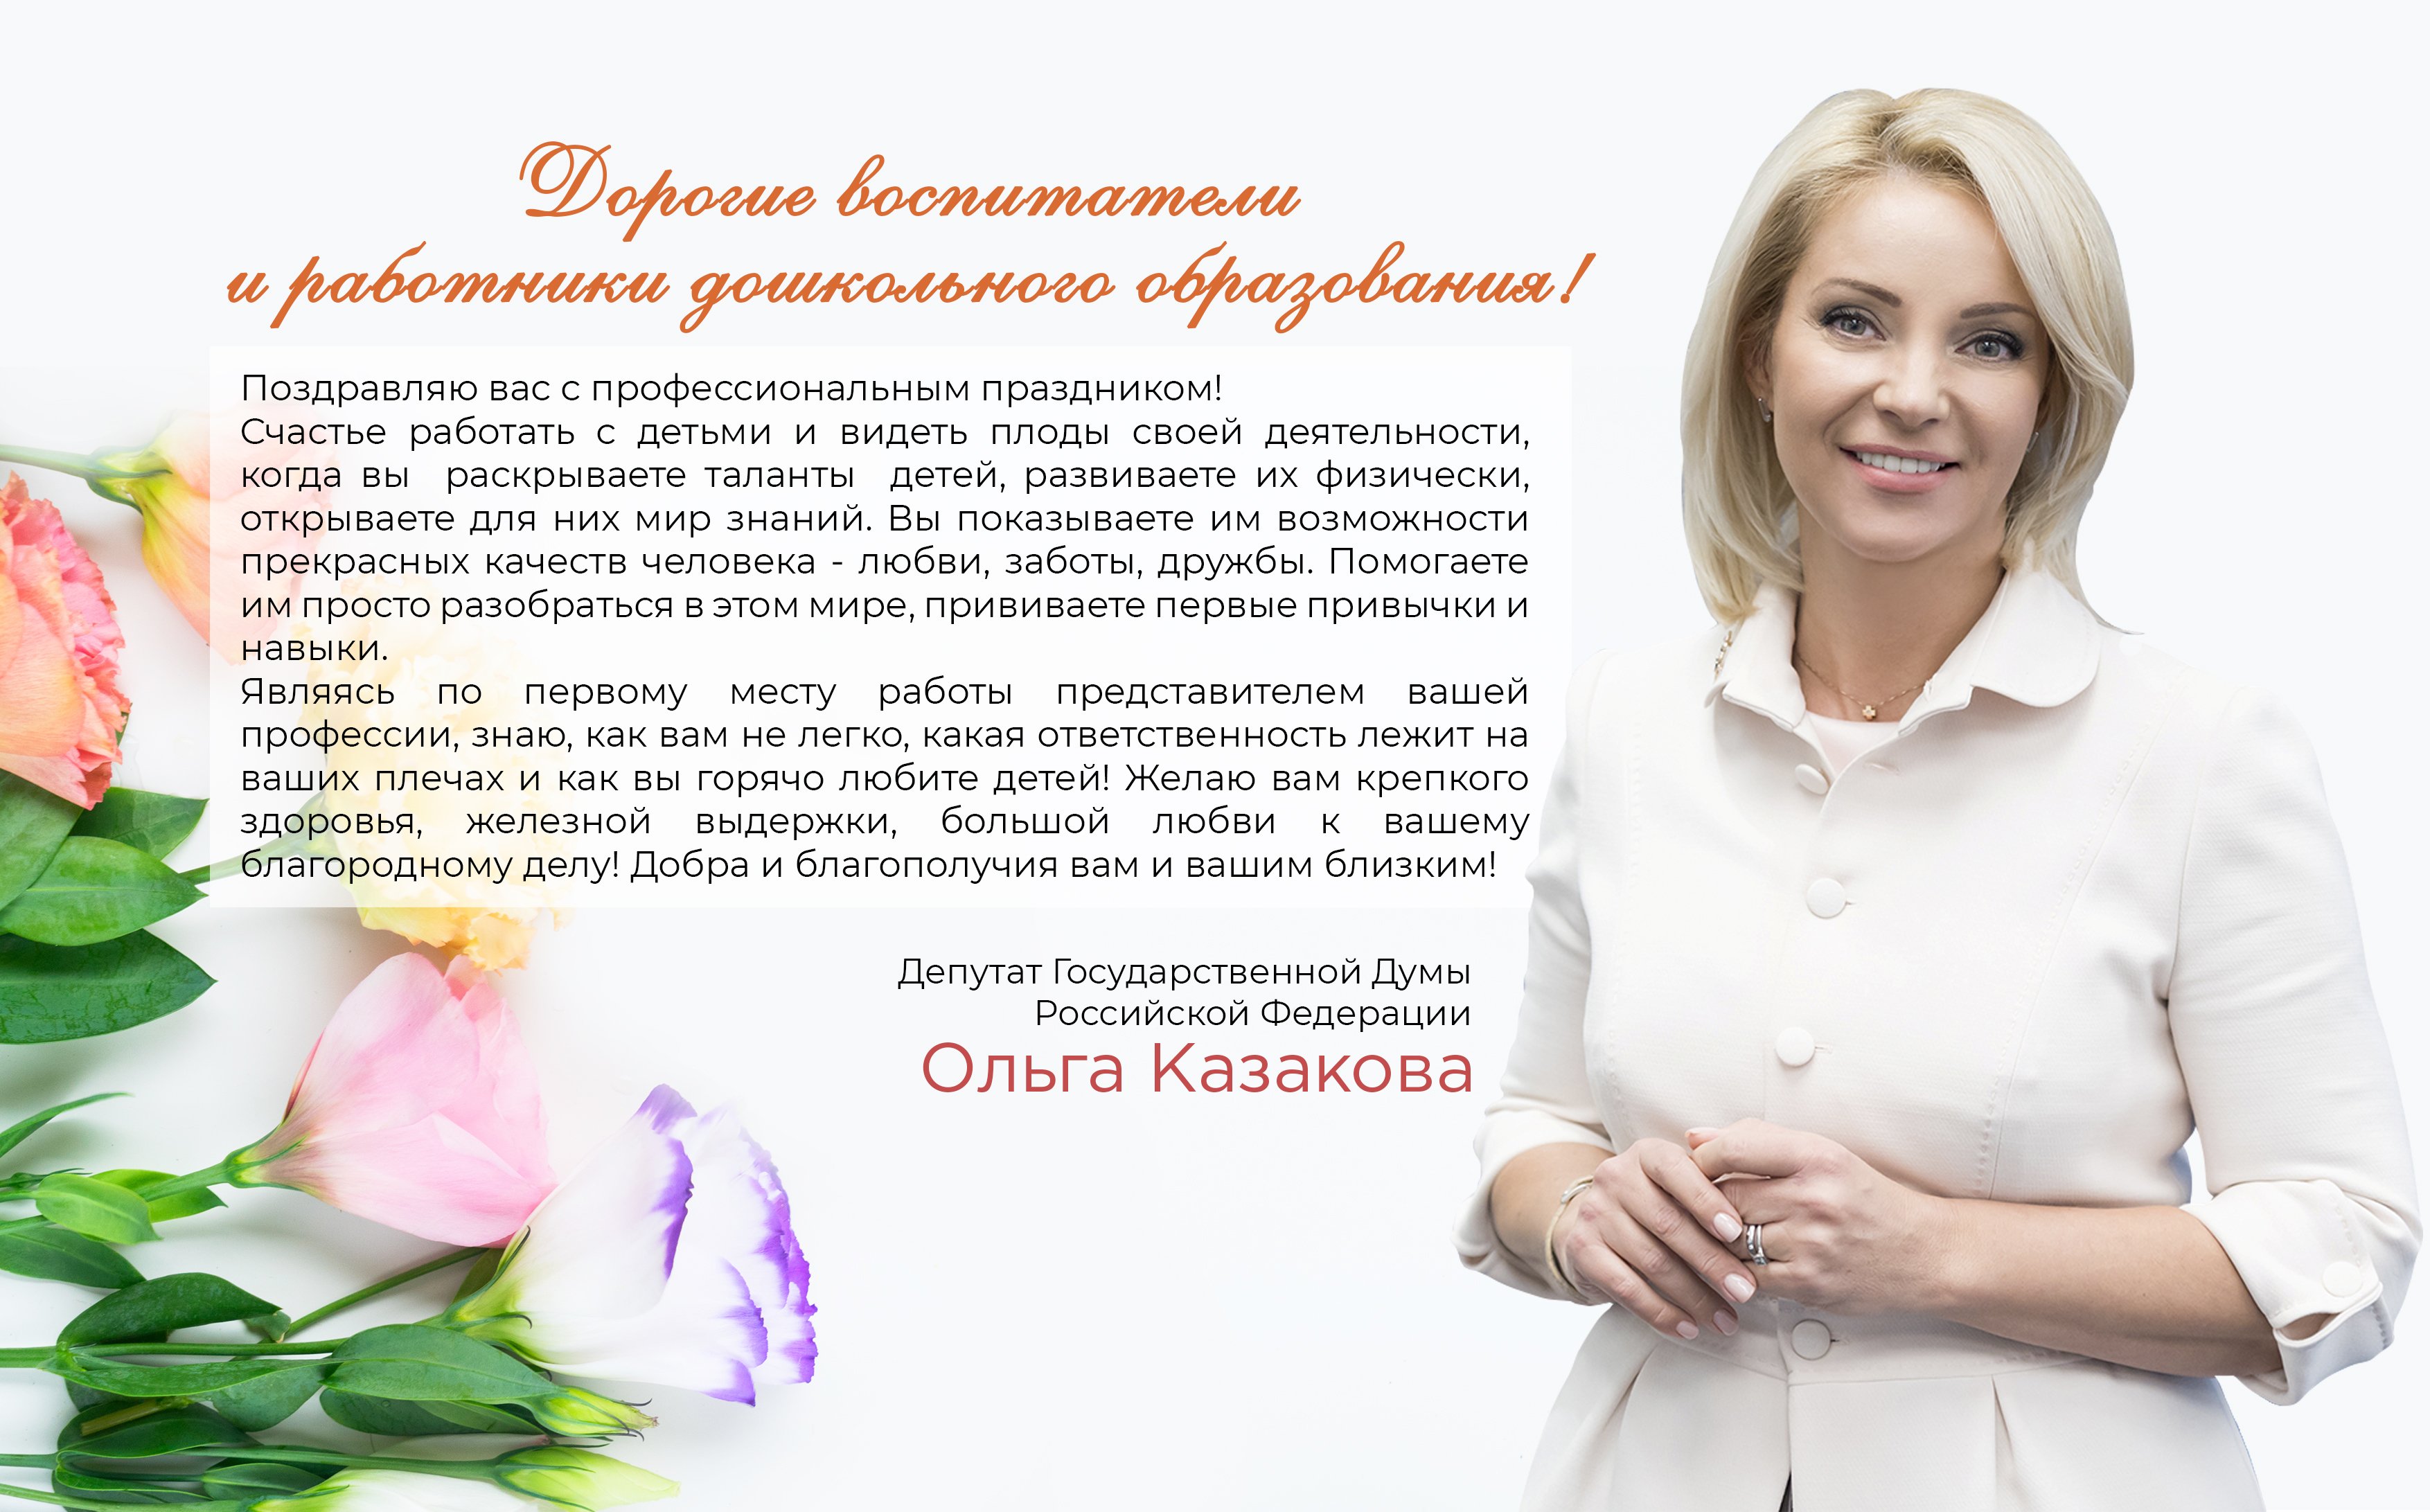 Поздравление женщинам россии. Поздравление женщине депутату. Поздравление депутата с днем рождения. Поздравление с днем рождения депутату женщине. Открытка с днем рождения депутату.